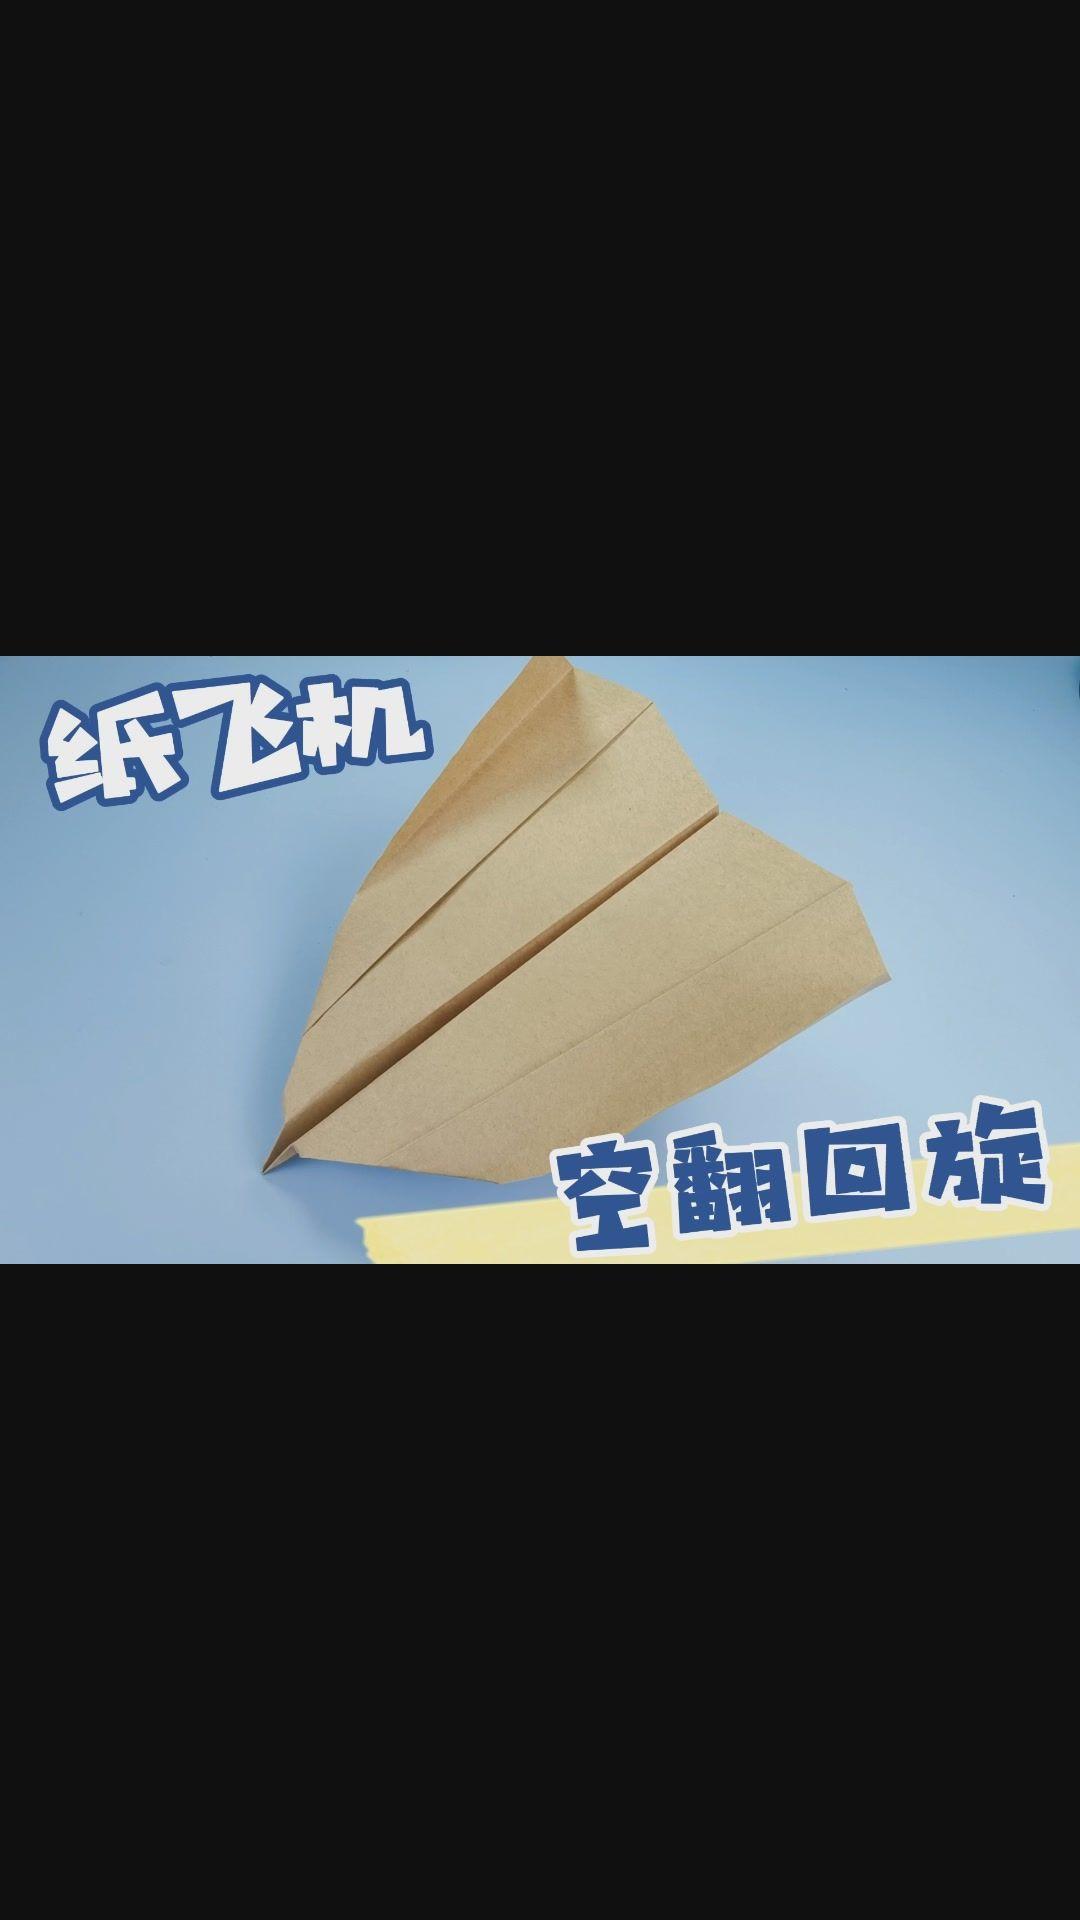 [纸飞机下载的视频不能播放怎么办]纸飞机下载的视频不能播放怎么办呢